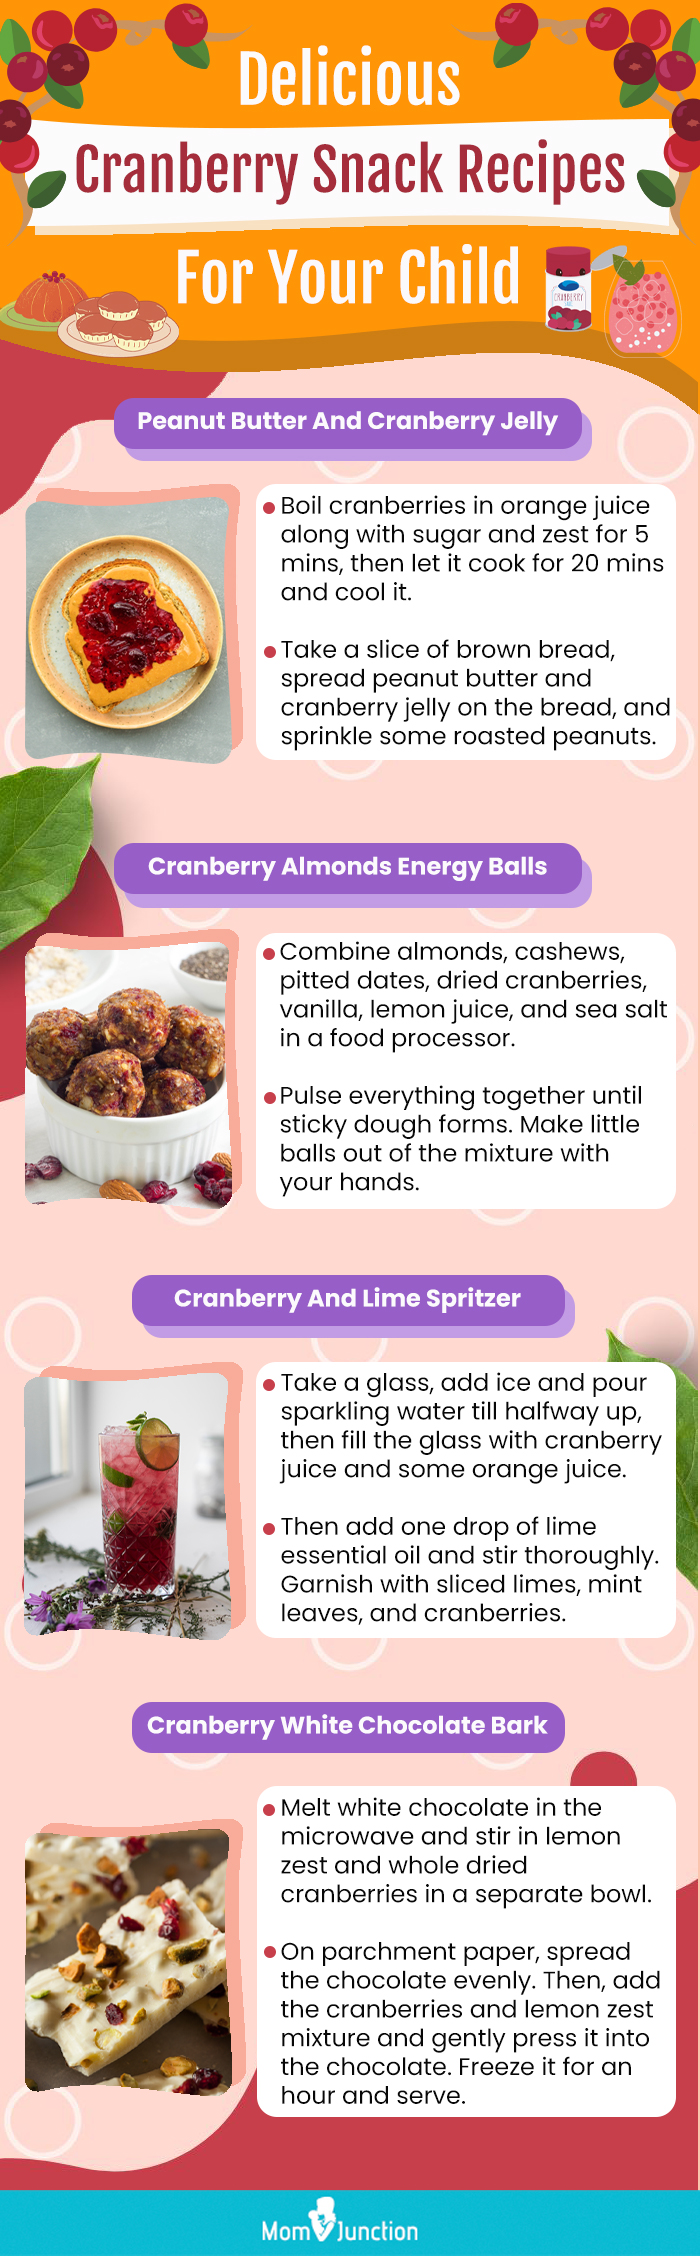 为你的孩子准备美味的蔓越莓零食食谱(信息图)